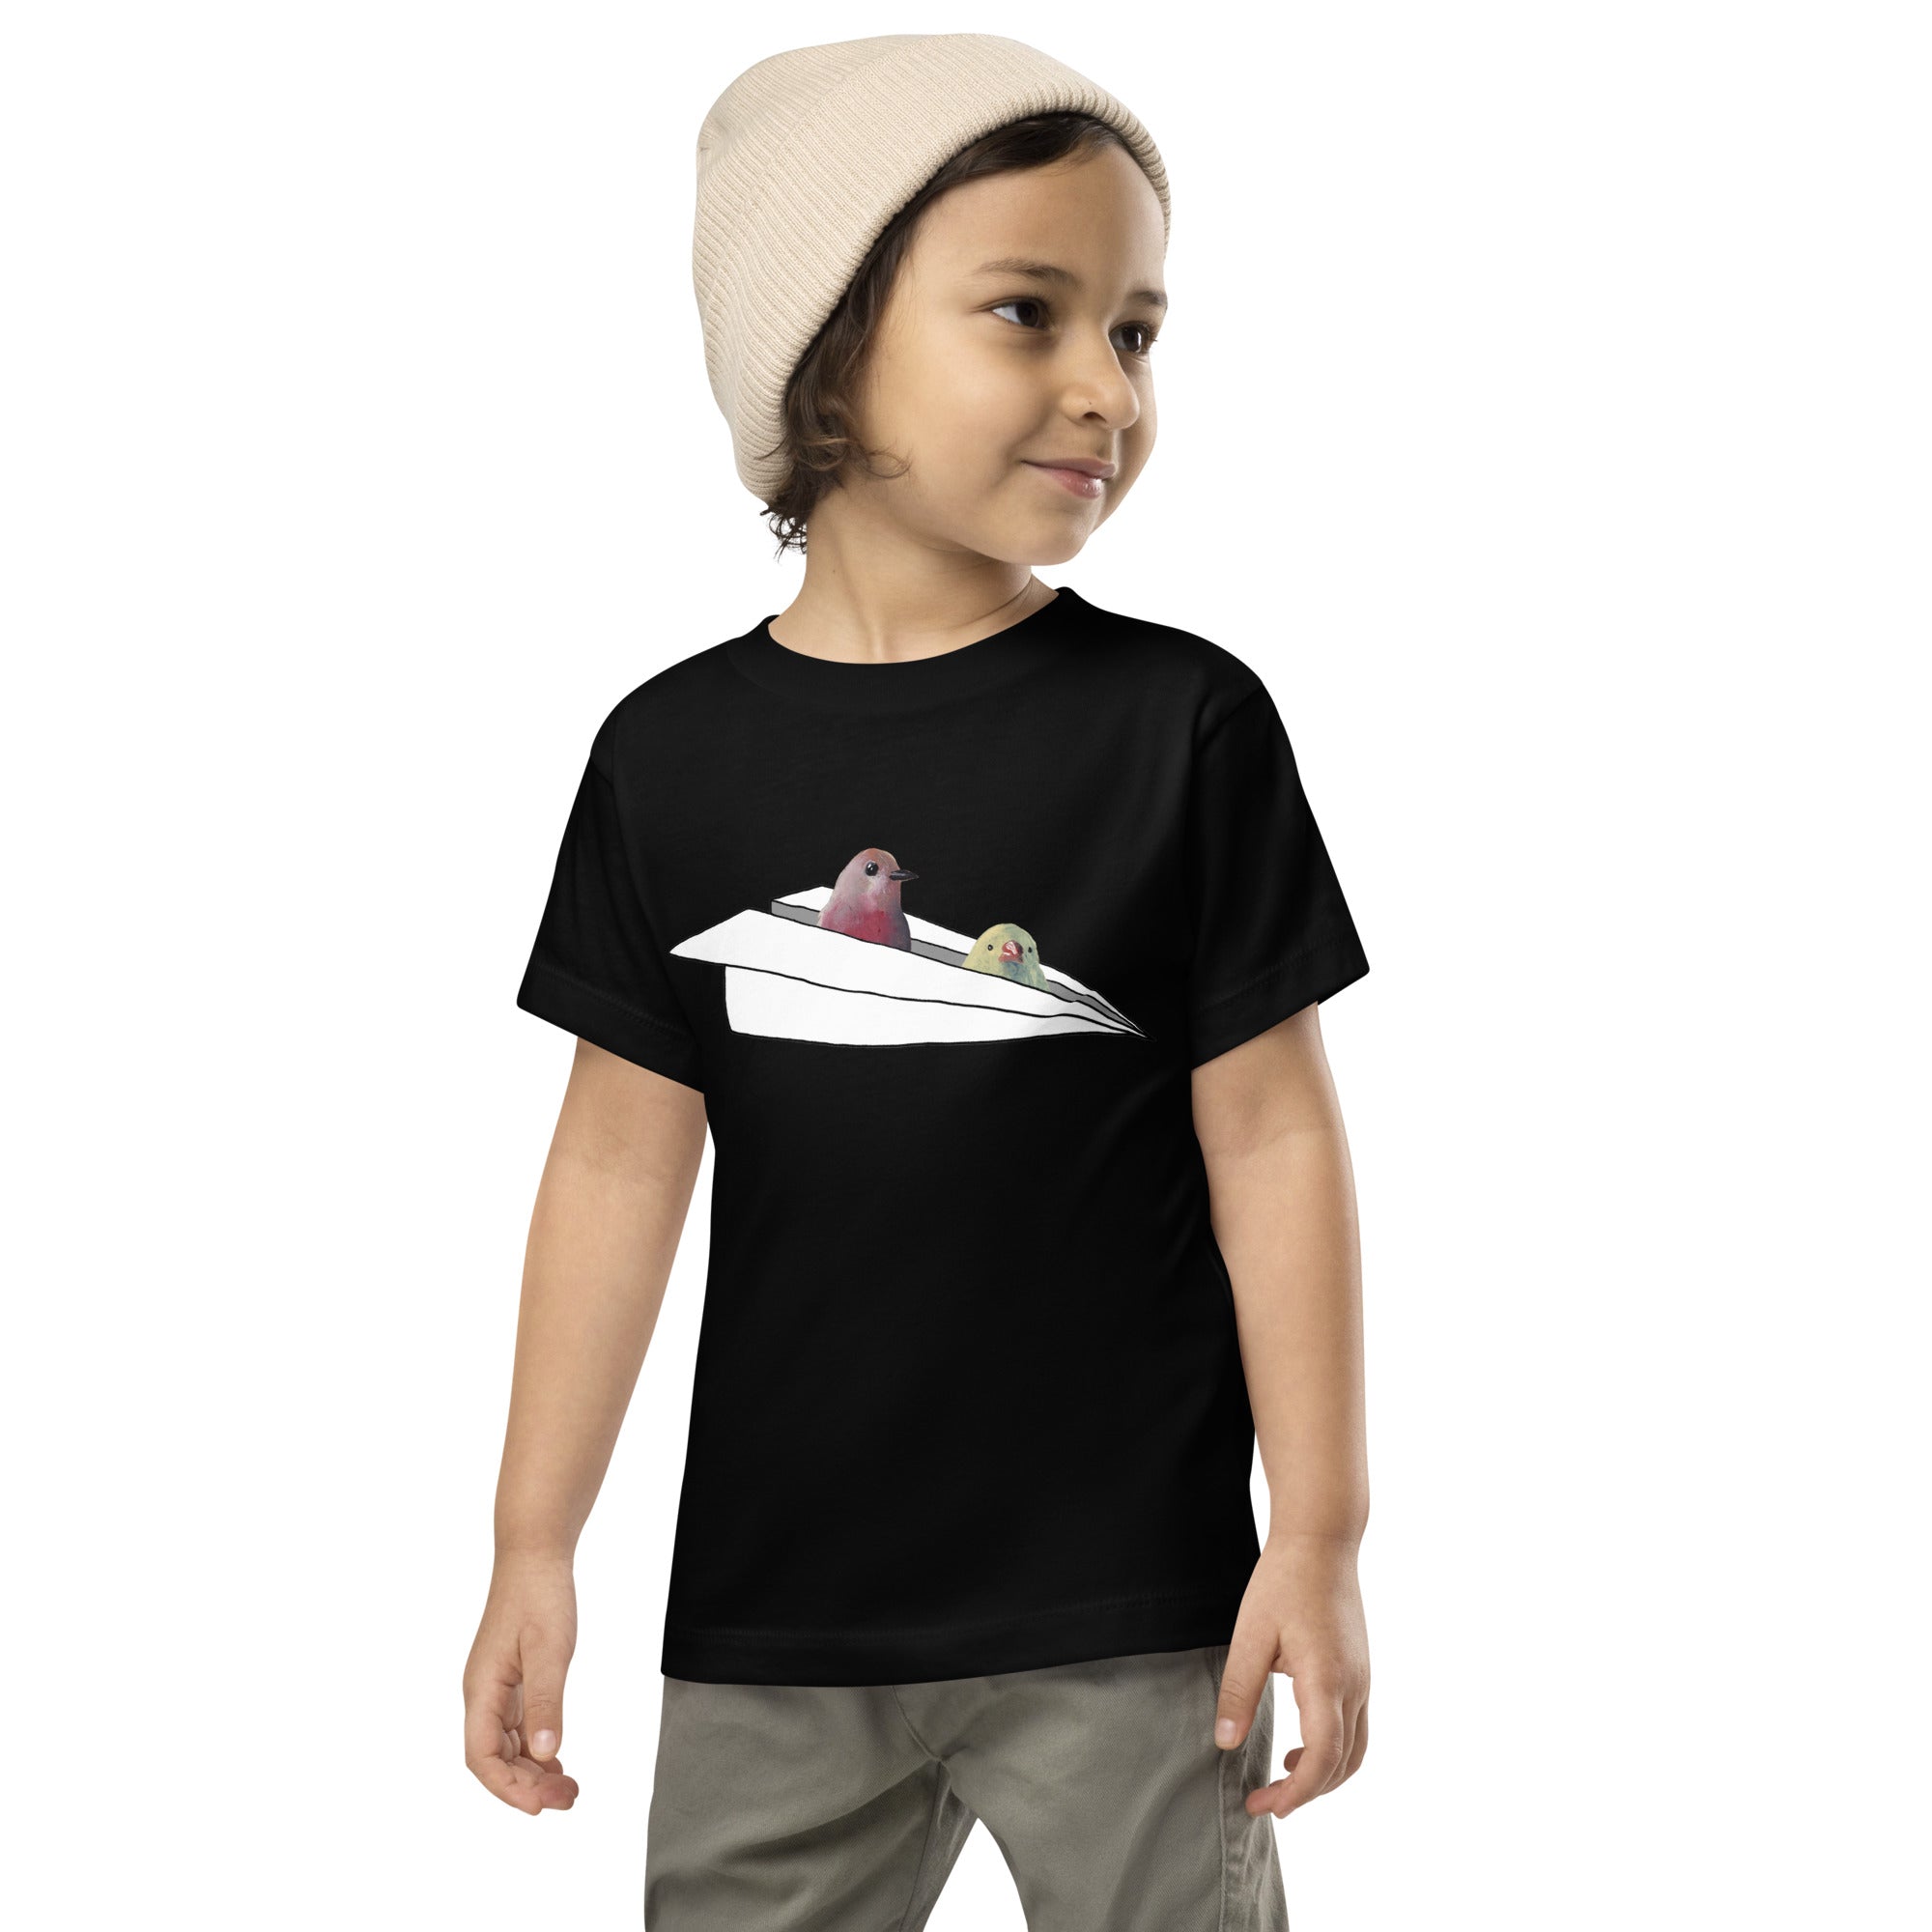 Airplane - Toddler T-Shirt